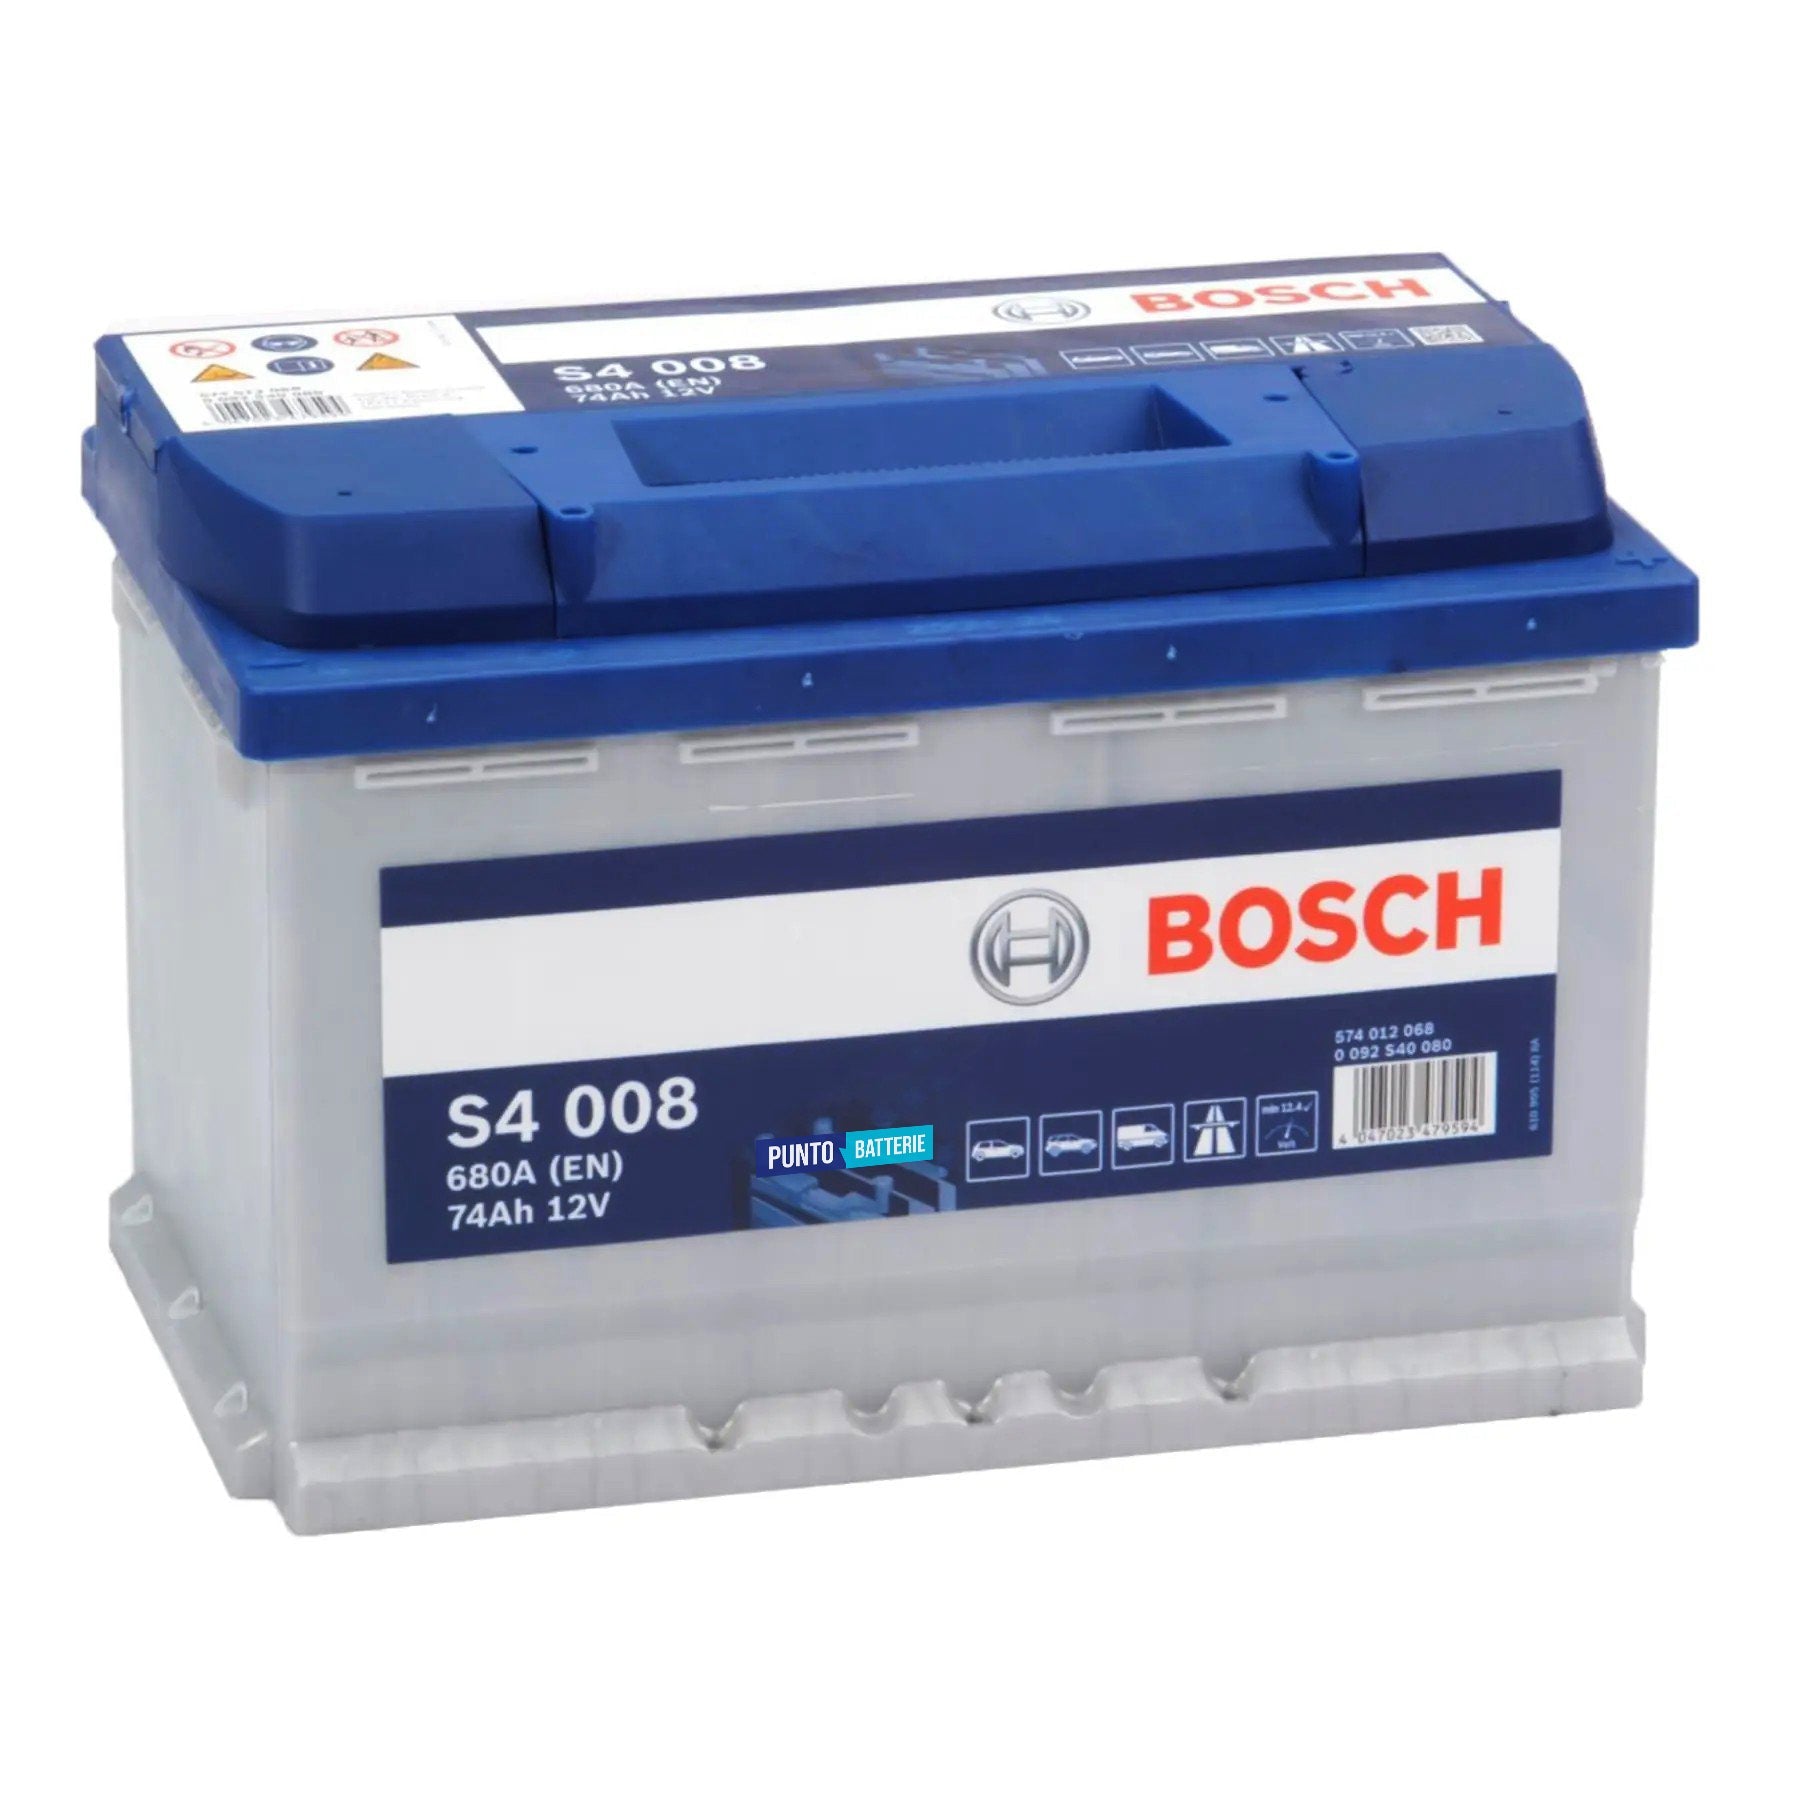 Batteria originale Bosch S4 S4 008, dimensioni 278 x 175 x 190, polo positivo a destra, 12 volt, 74 amperora, 680 ampere. Batteria per auto e veicoli leggeri.